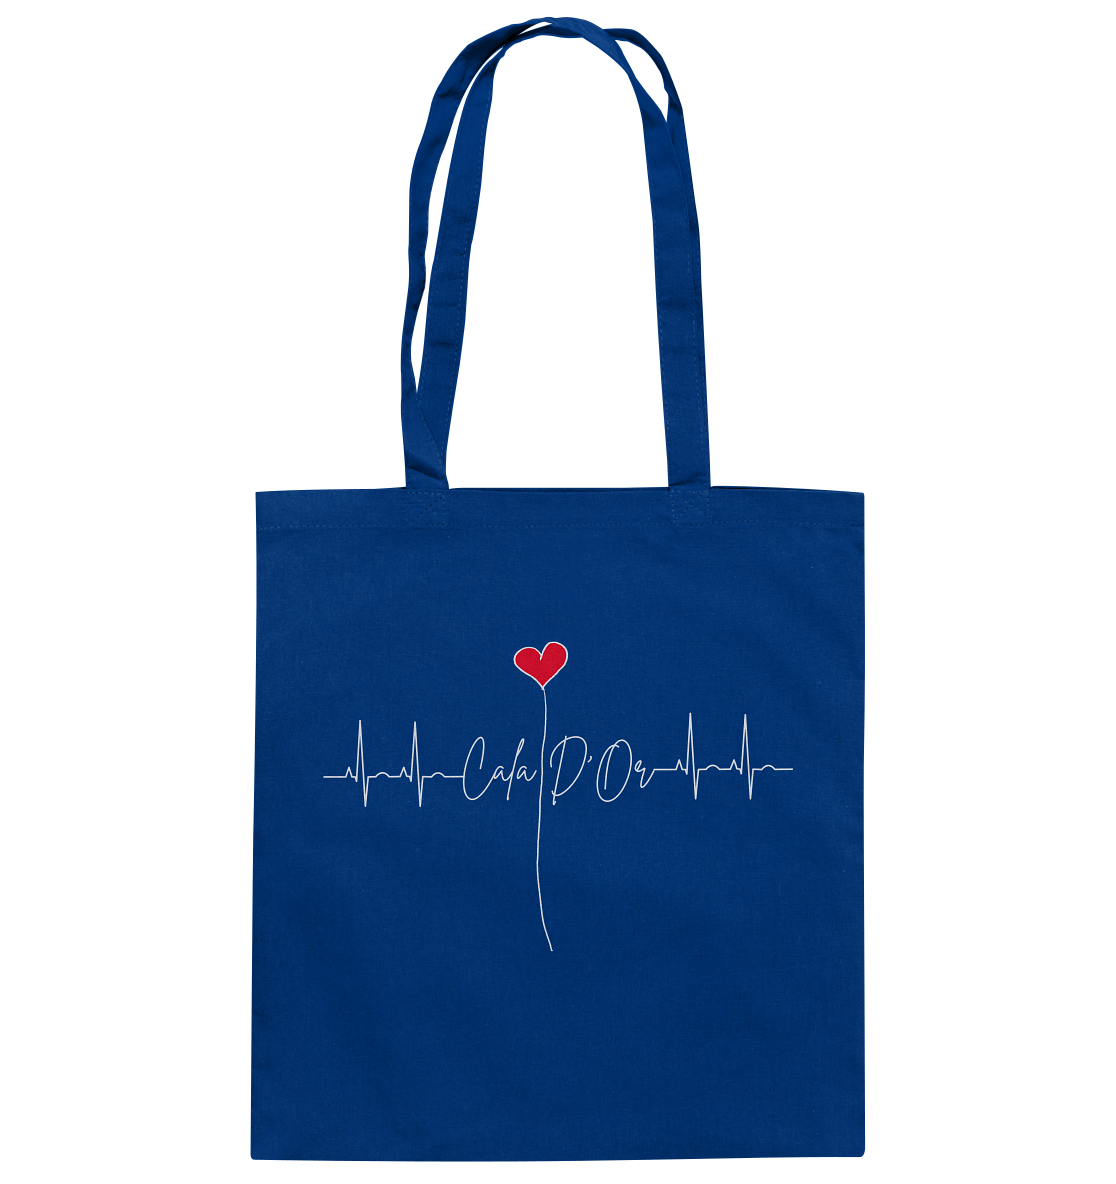 Royalblaue Baumwolltragetaschen mit weißer Aufschrift Cala D'Or und einem Herz